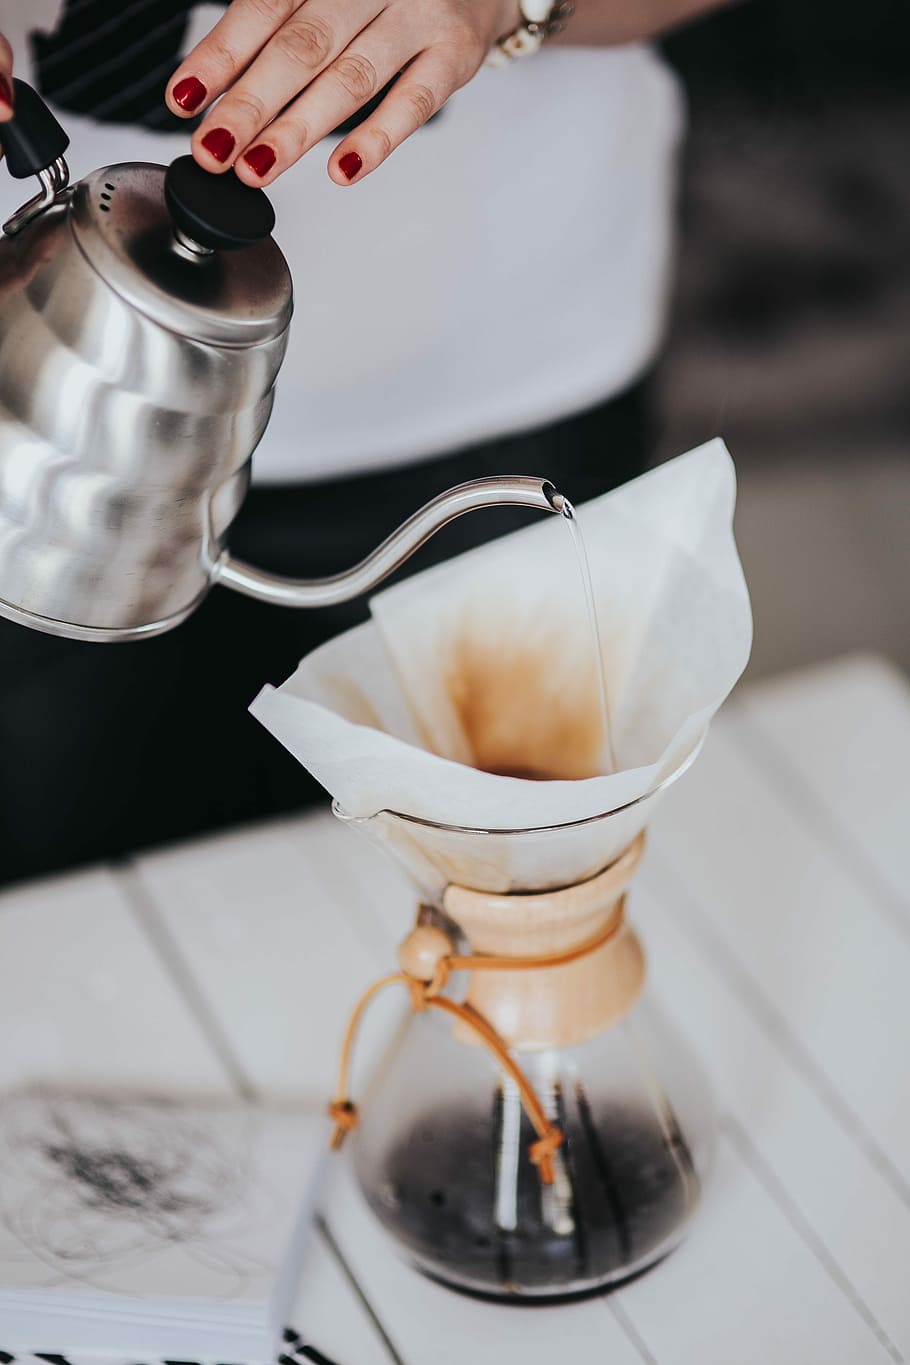 menuangkan, air, pembuat kopi filter chemex, wanita, chemex, kopi filter, pembuat kopi, kopi, kafe, air panas